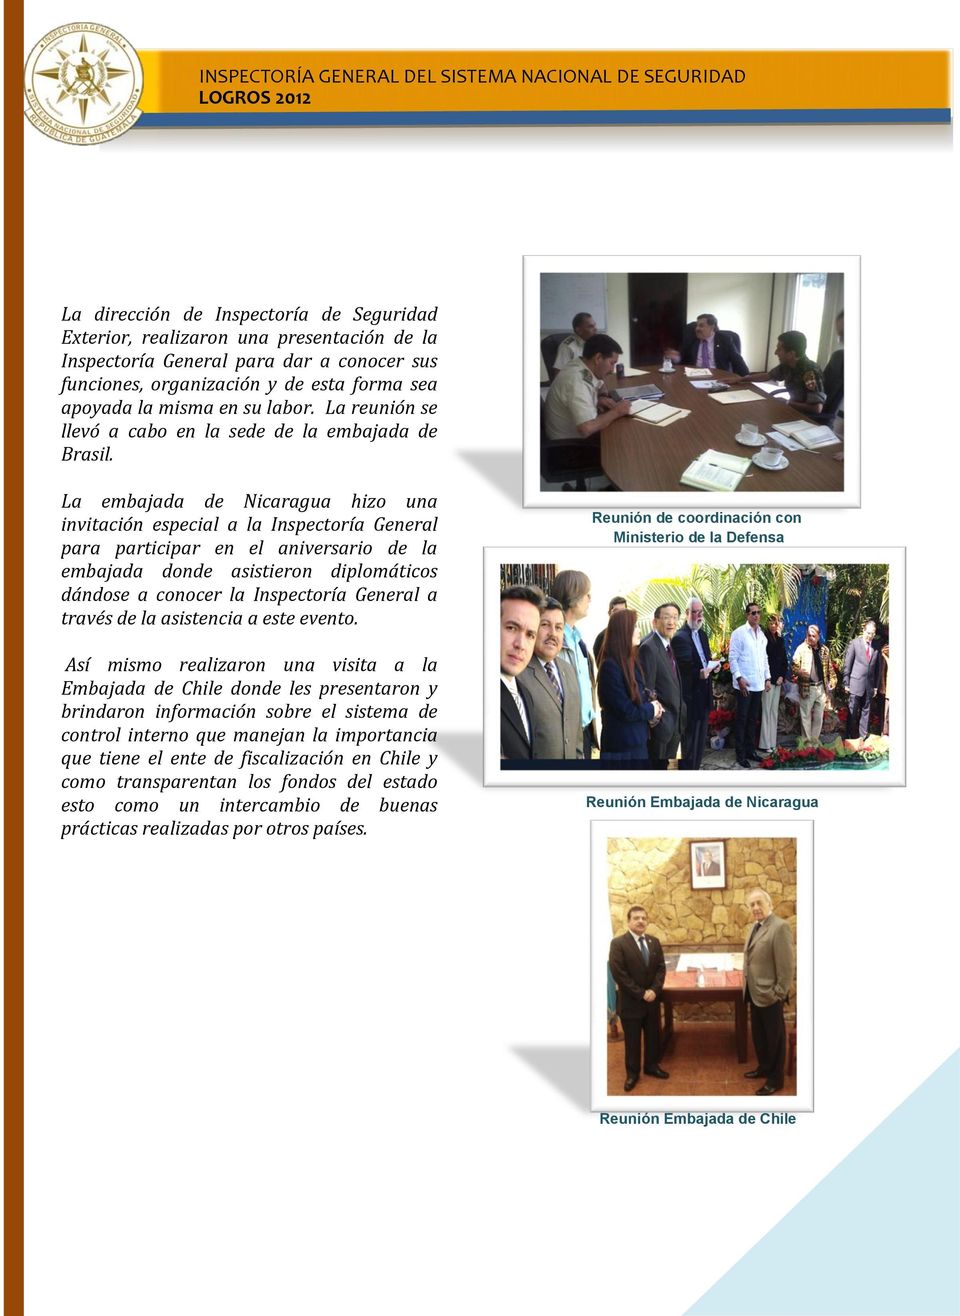 La embajada de Nicaragua hizo una invitación especial a la Inspectoría General para participar en el aniversario de la embajada donde asistieron diplomáticos dándose a conocer la Inspectoría General